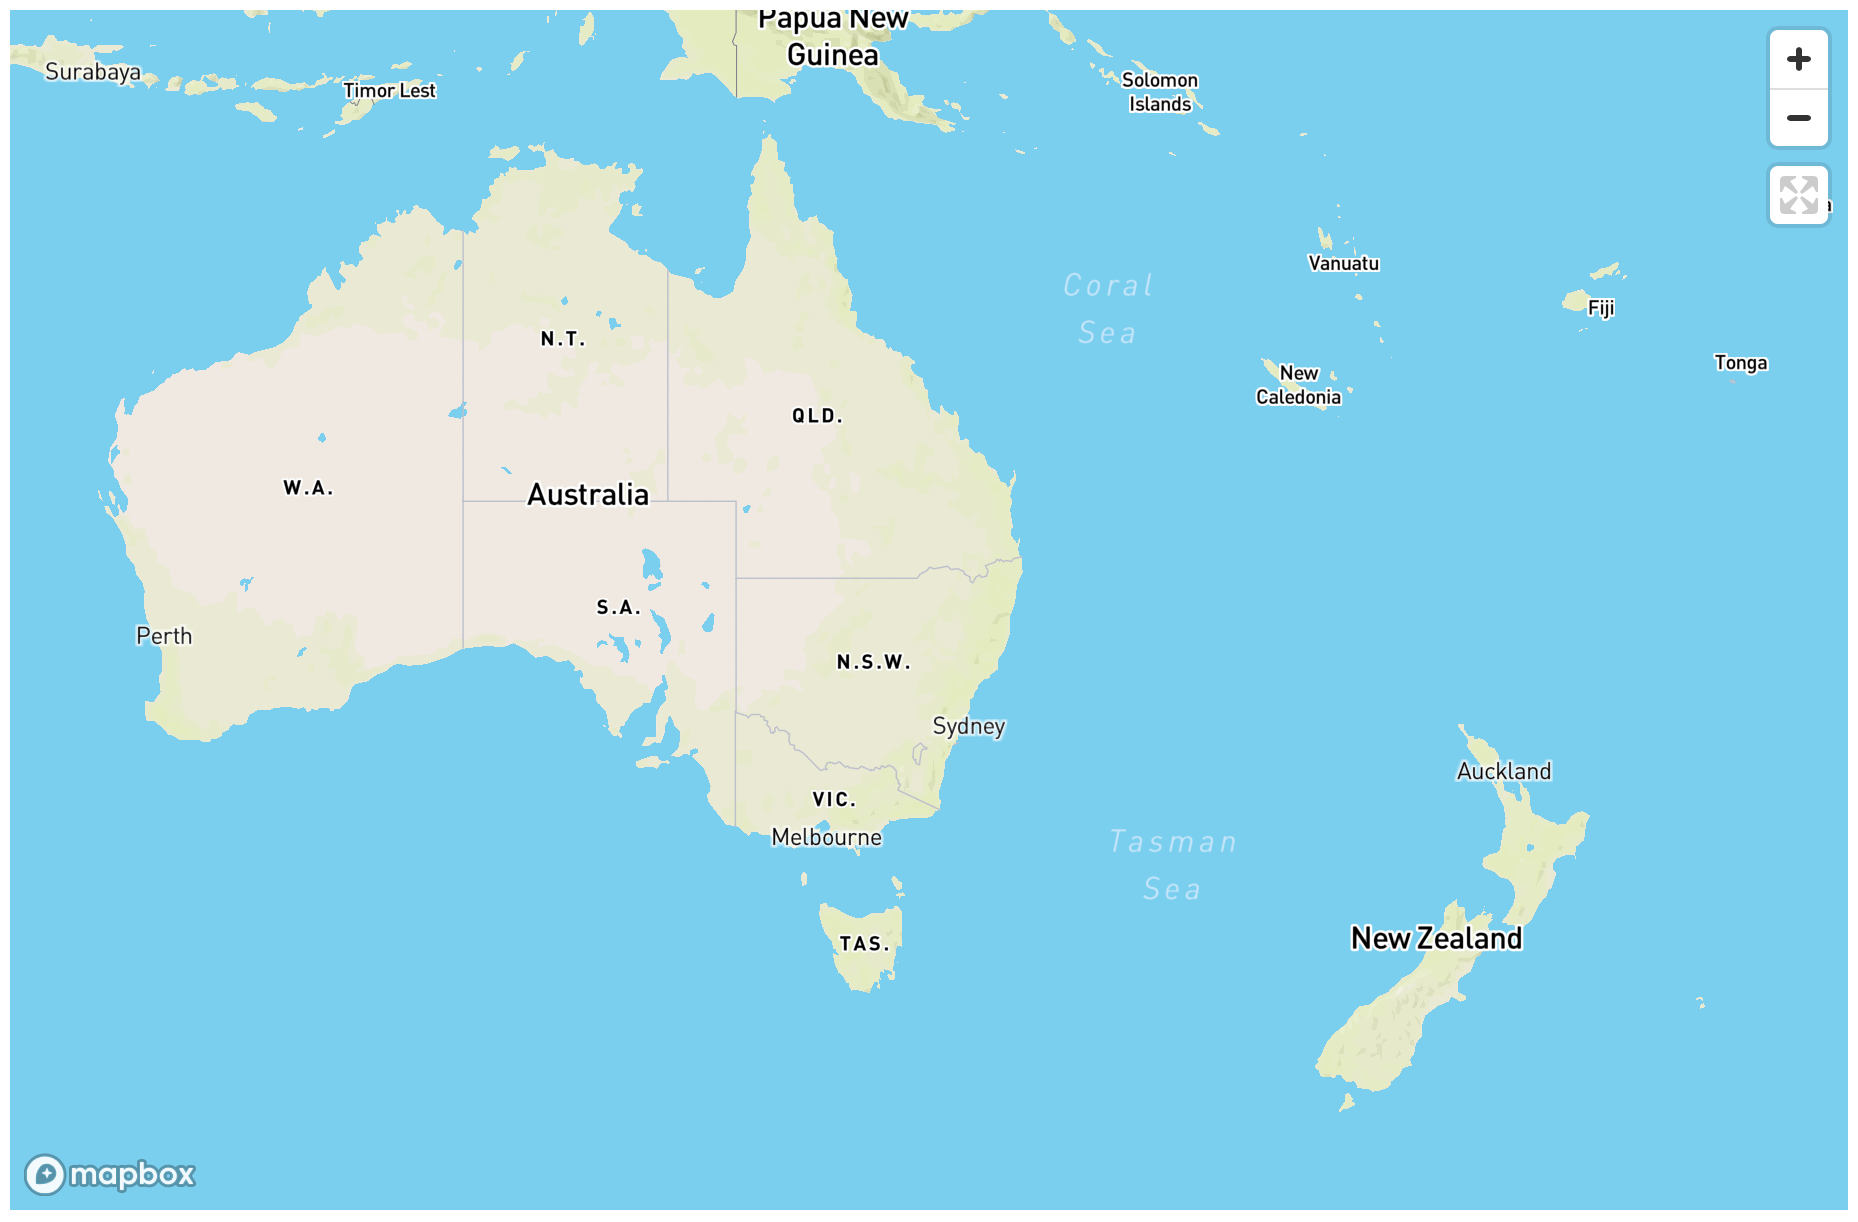 new zealand tour to australia